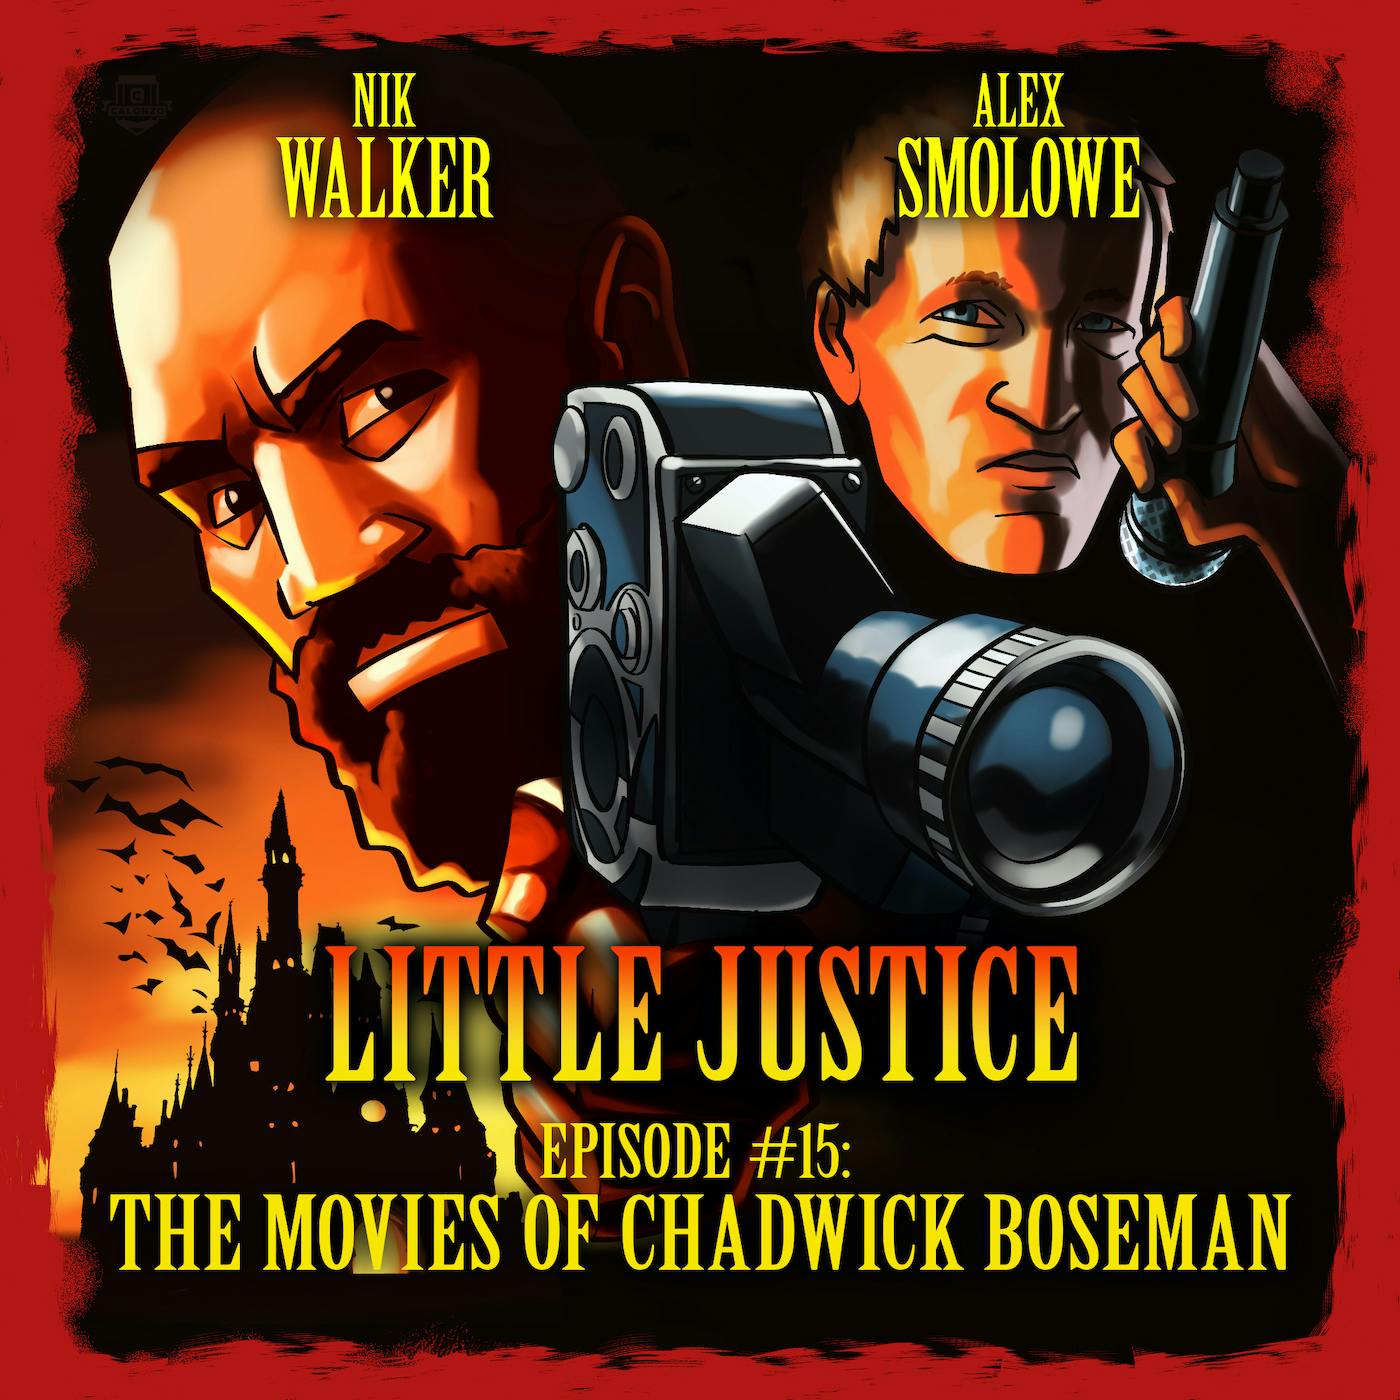 The Movies of Chadwick Boseman